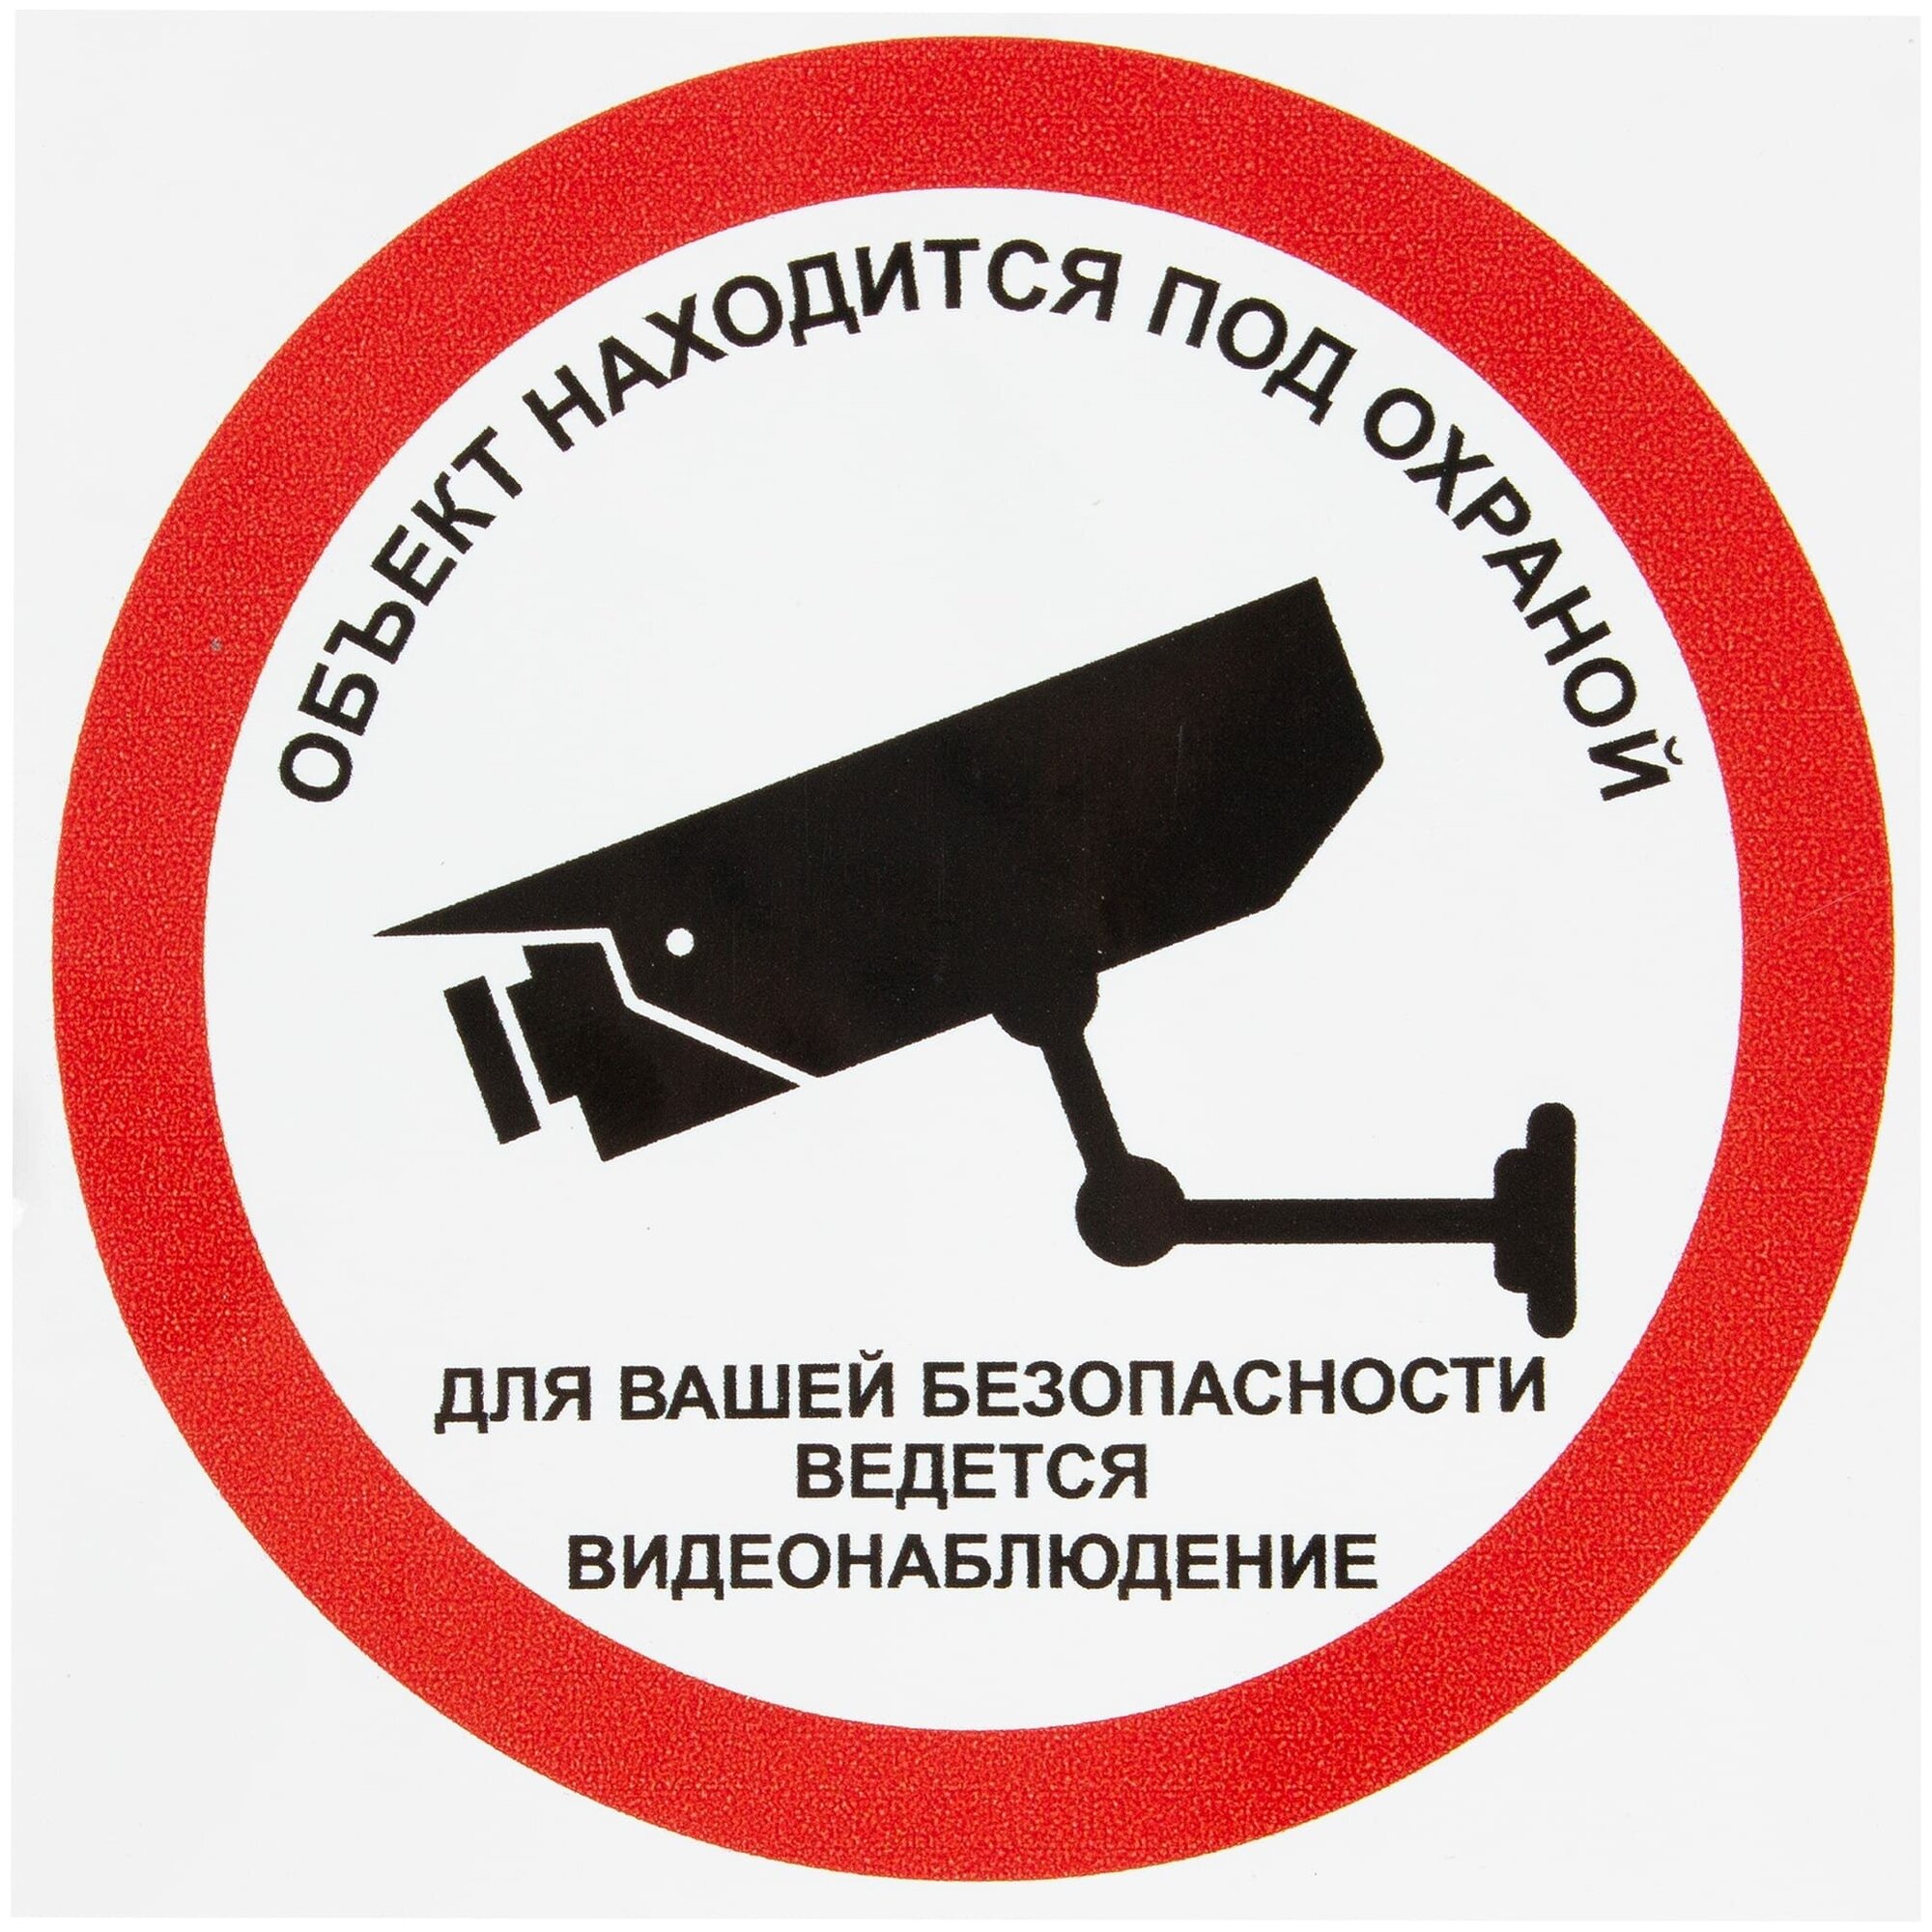 Наклейка «Охрана ведётся видеонаблюдение» 10х10 см полиэстер